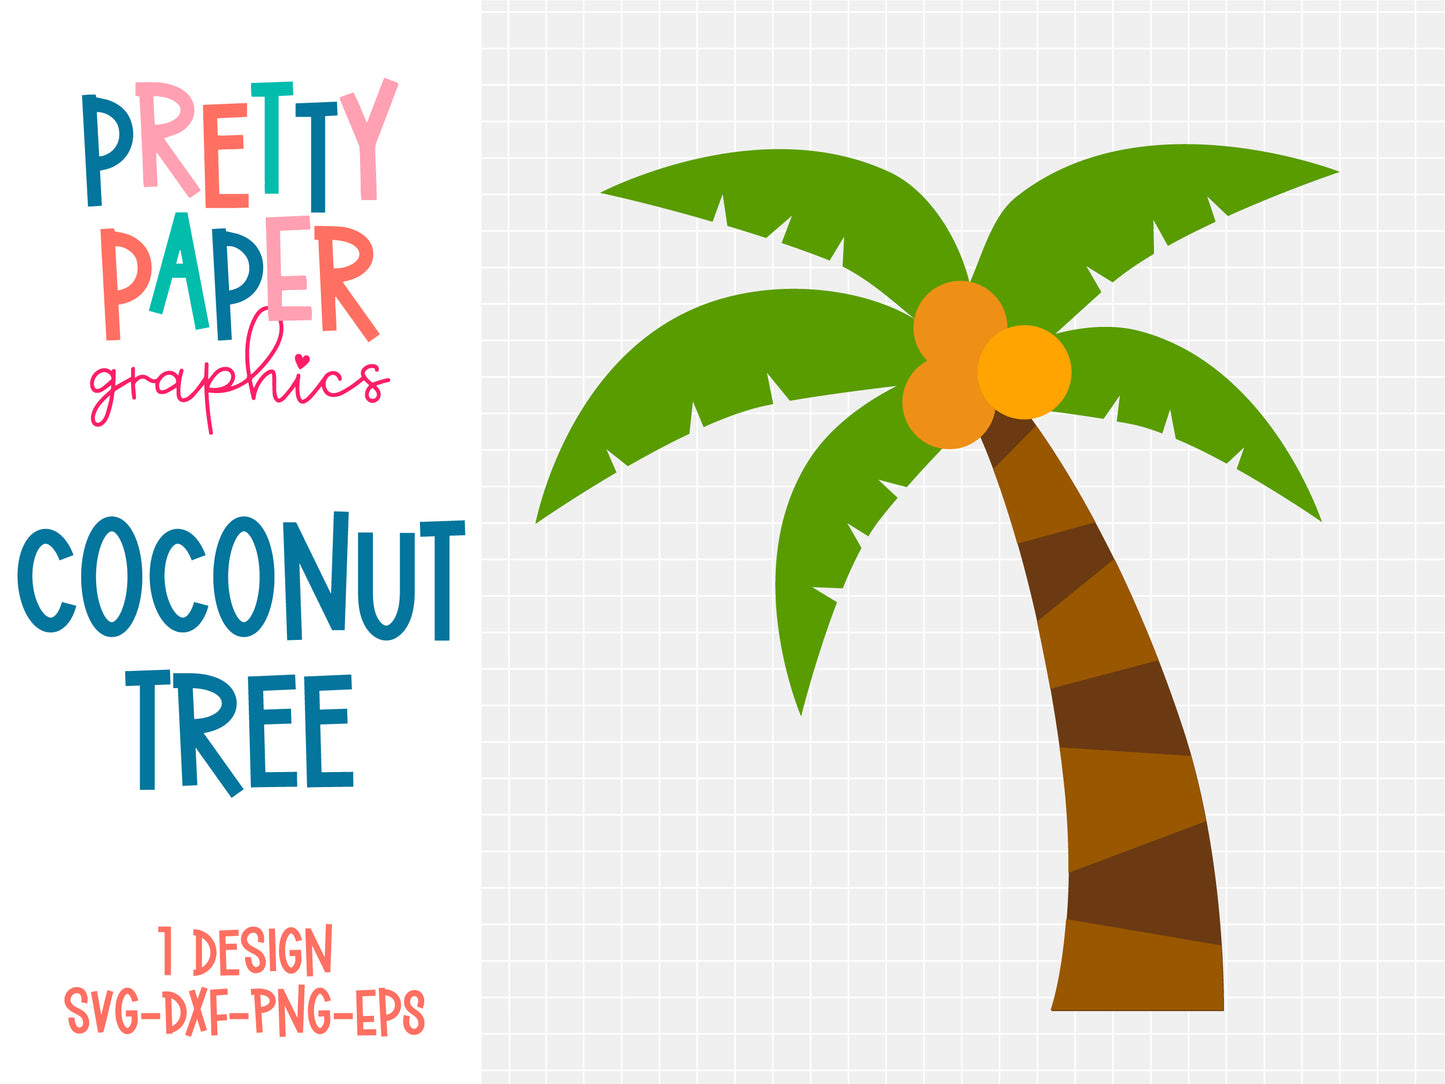 Pretty Paper Graphics Coconut Tree SVG Cut File